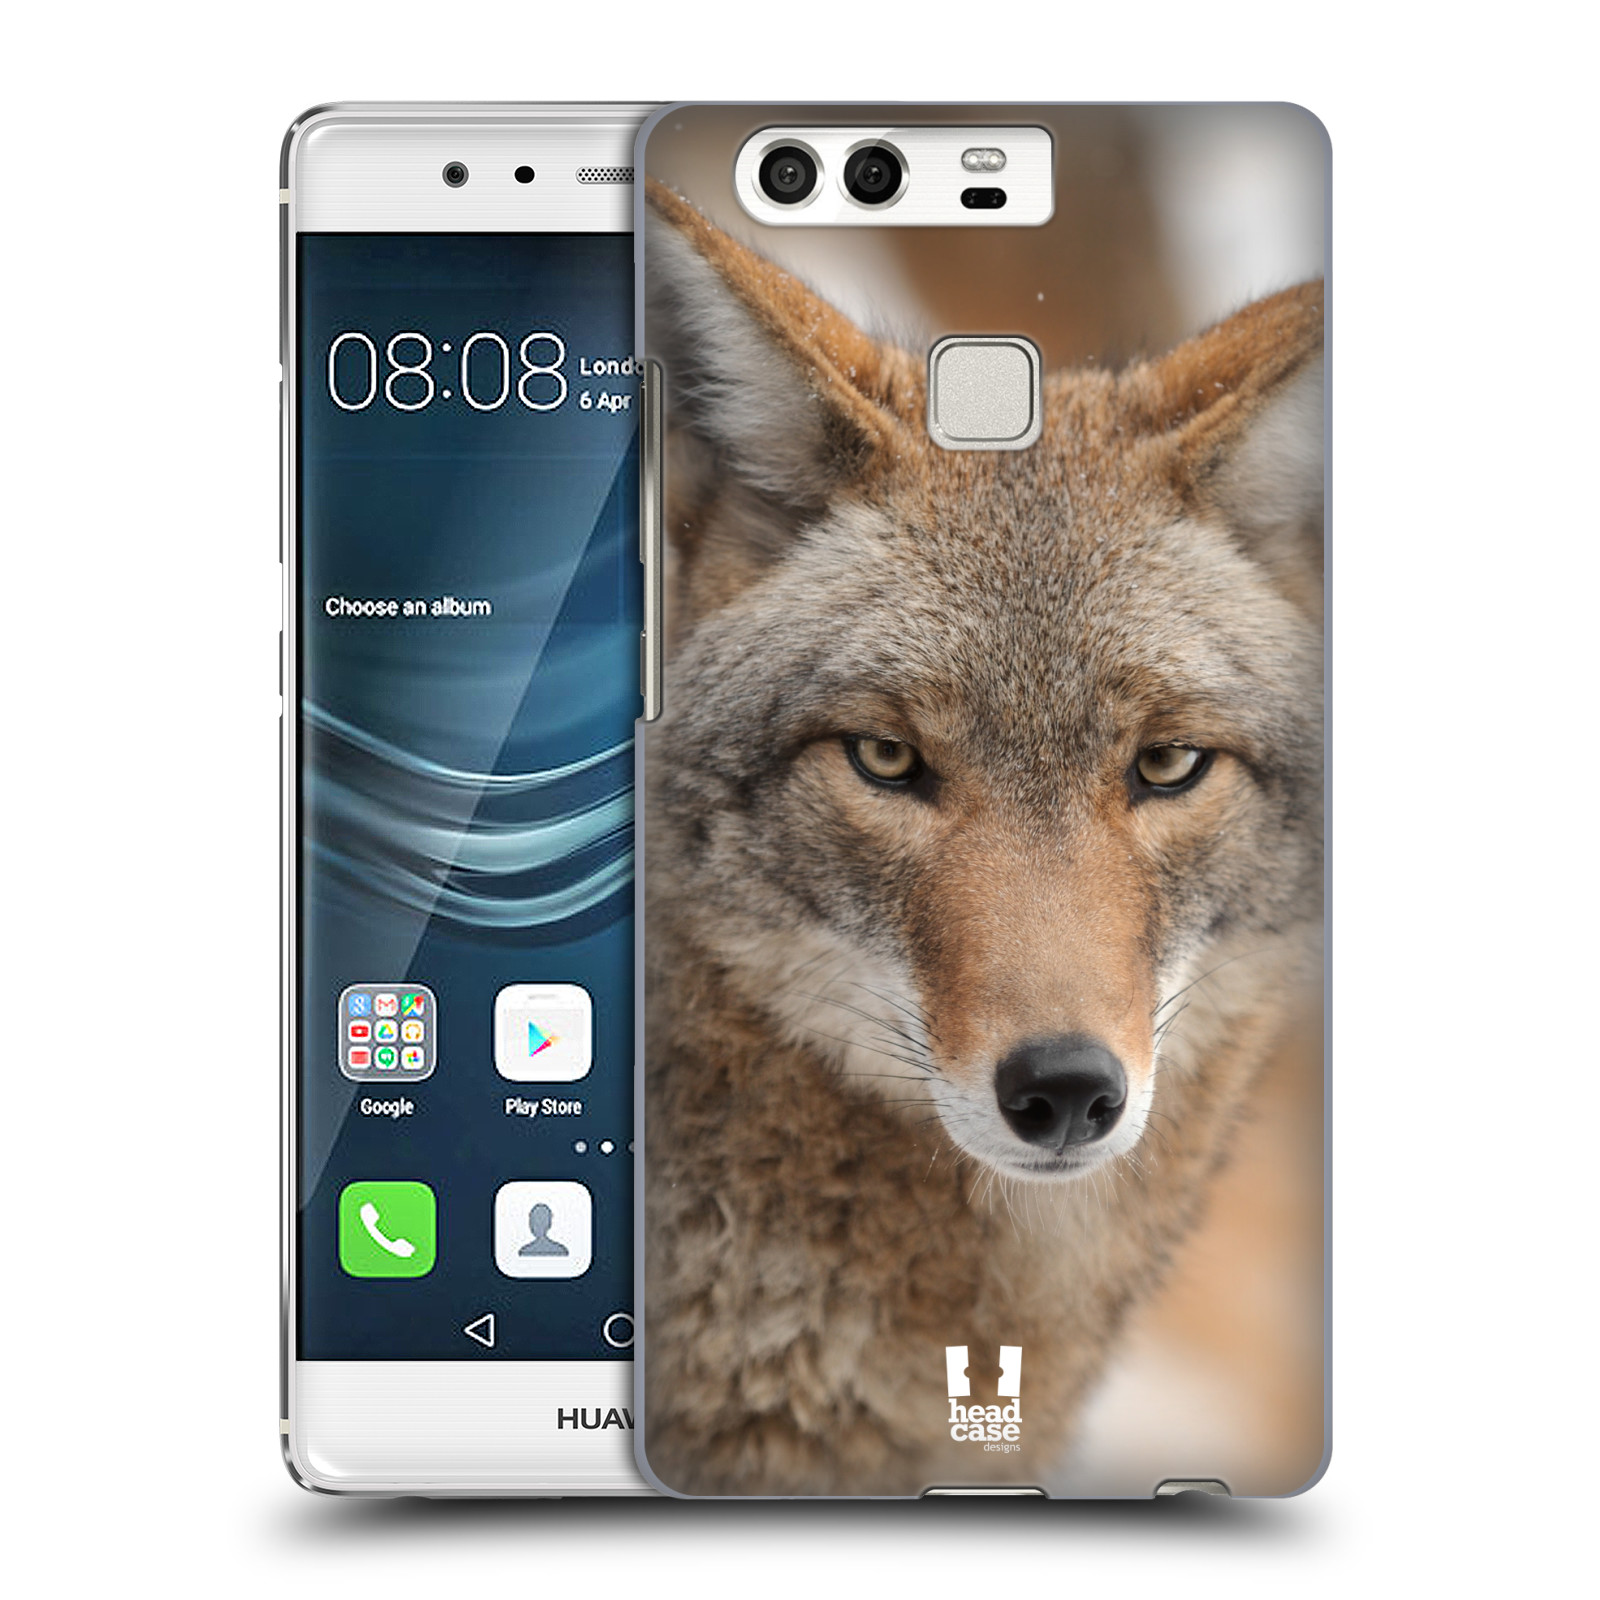 HEAD CASE plastový obal na mobil Huawei P9 / P9 DUAL SIM vzor slavná zvířata foto kojot